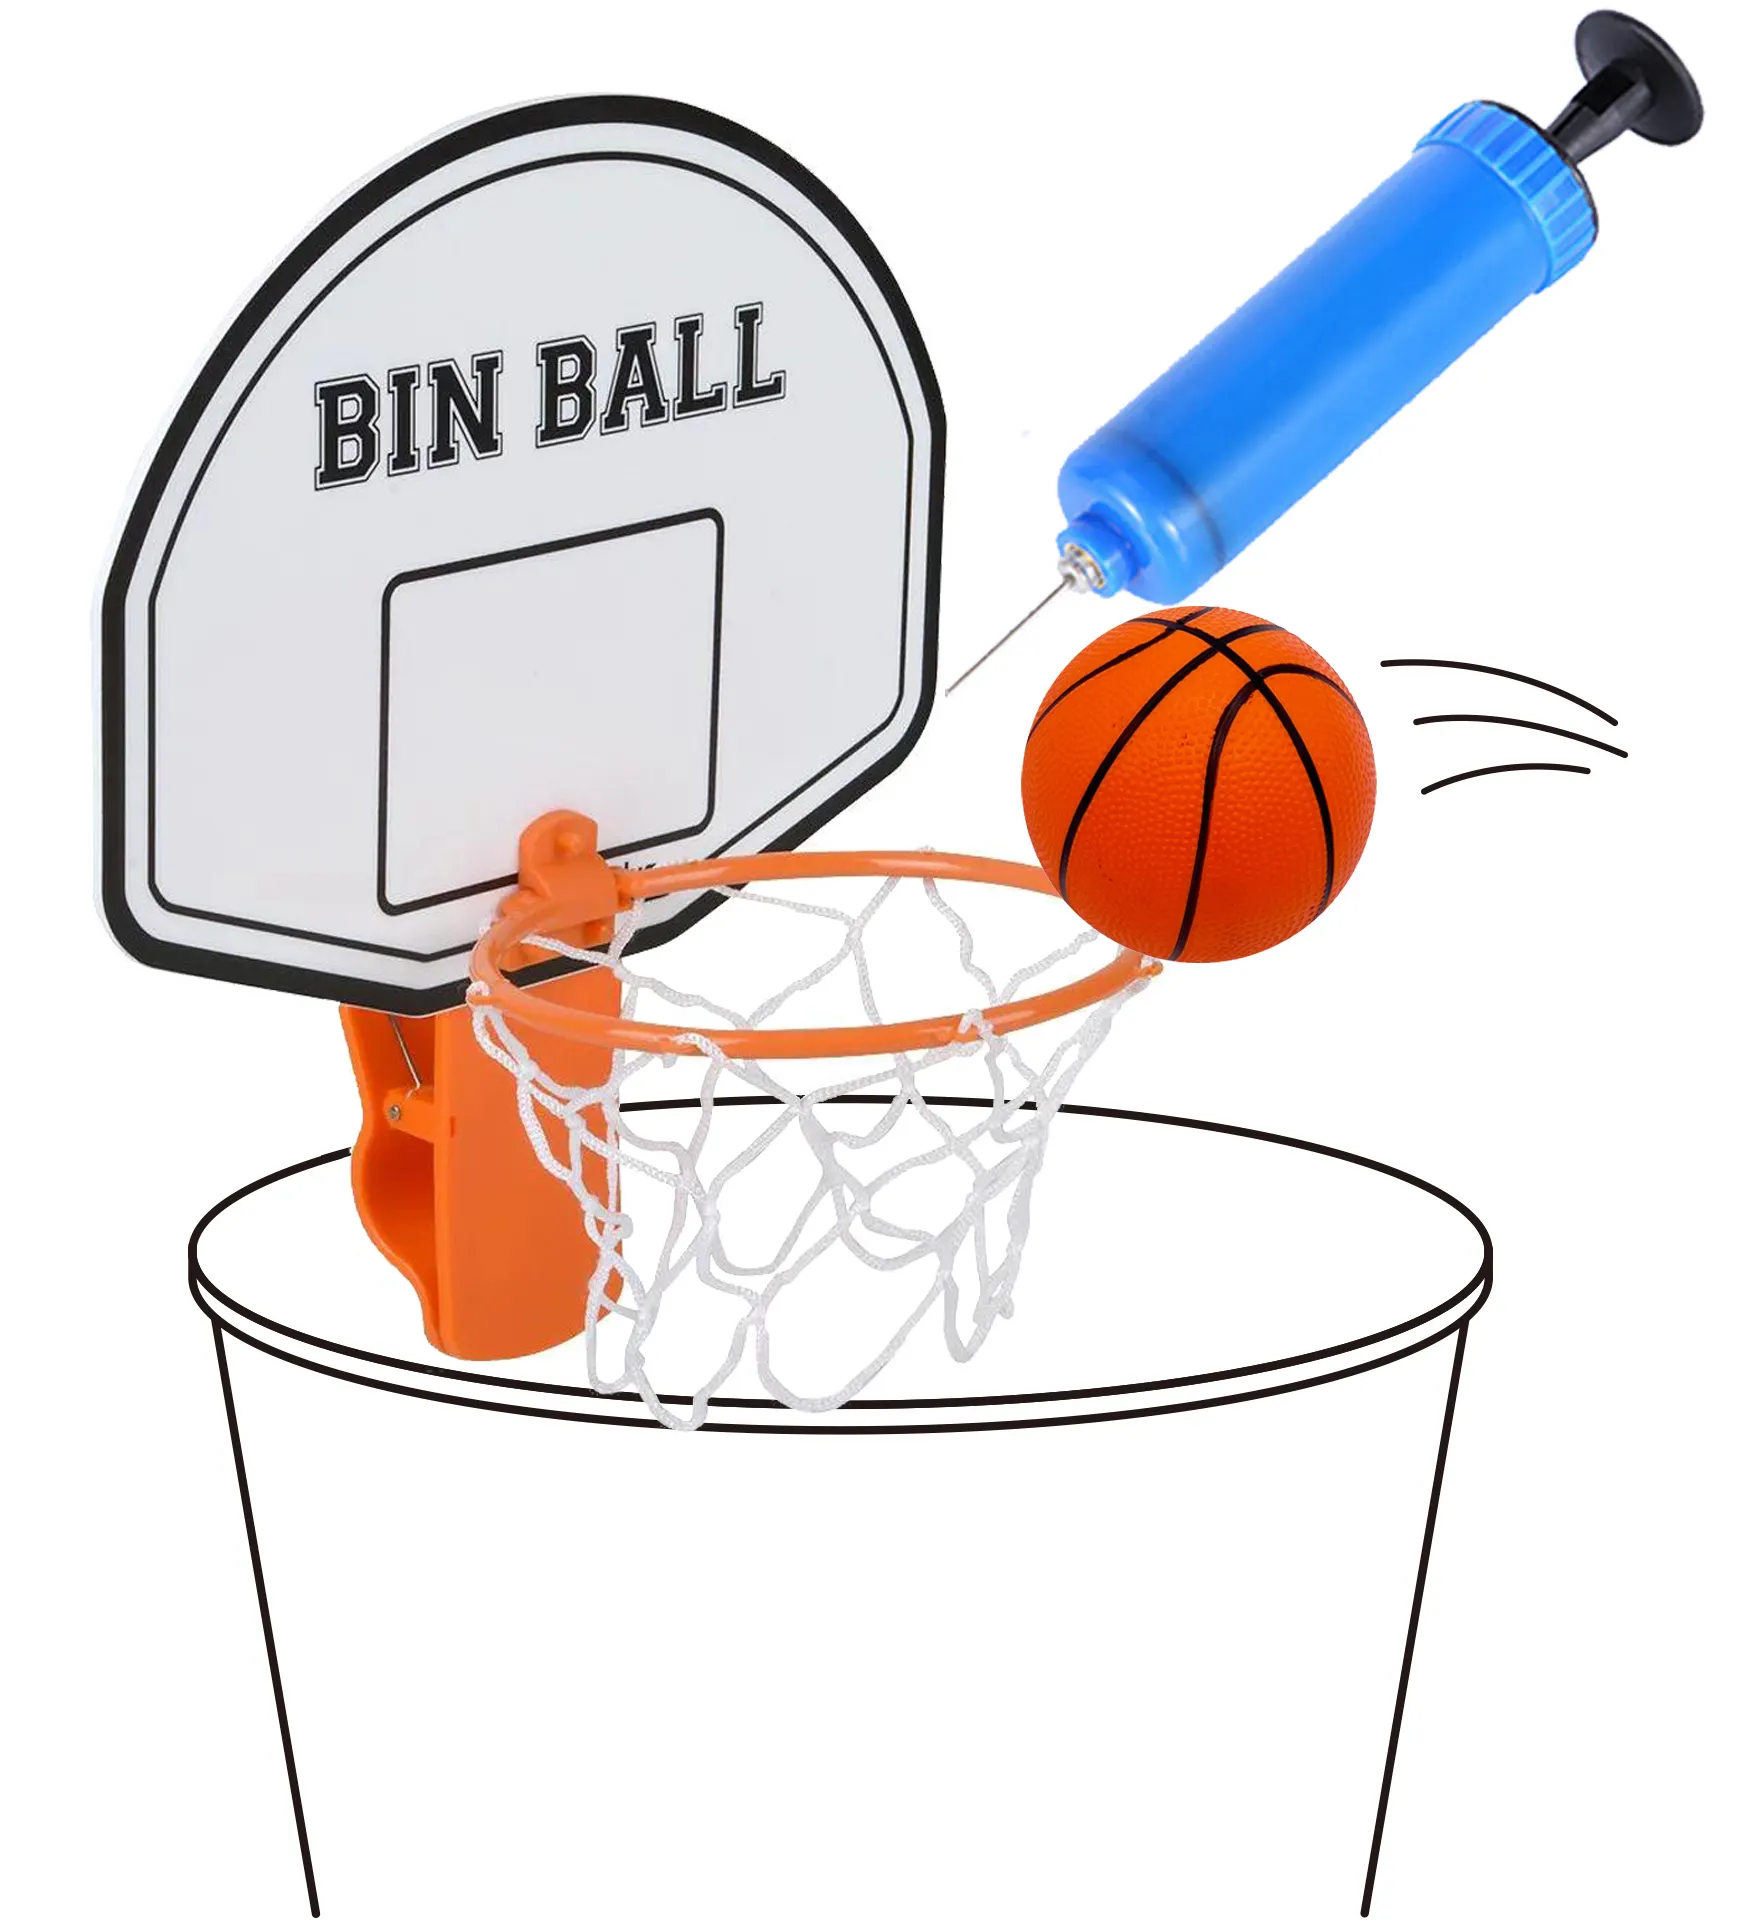 مغناطيس داخلي لعبة كرة سلة مصغرة لعبة كرة السلة اللوحة الخلفية إطار حاوية القمامة لعبة أداة المنتج المحمولة شنقا بلاستيكية قابلة للطي